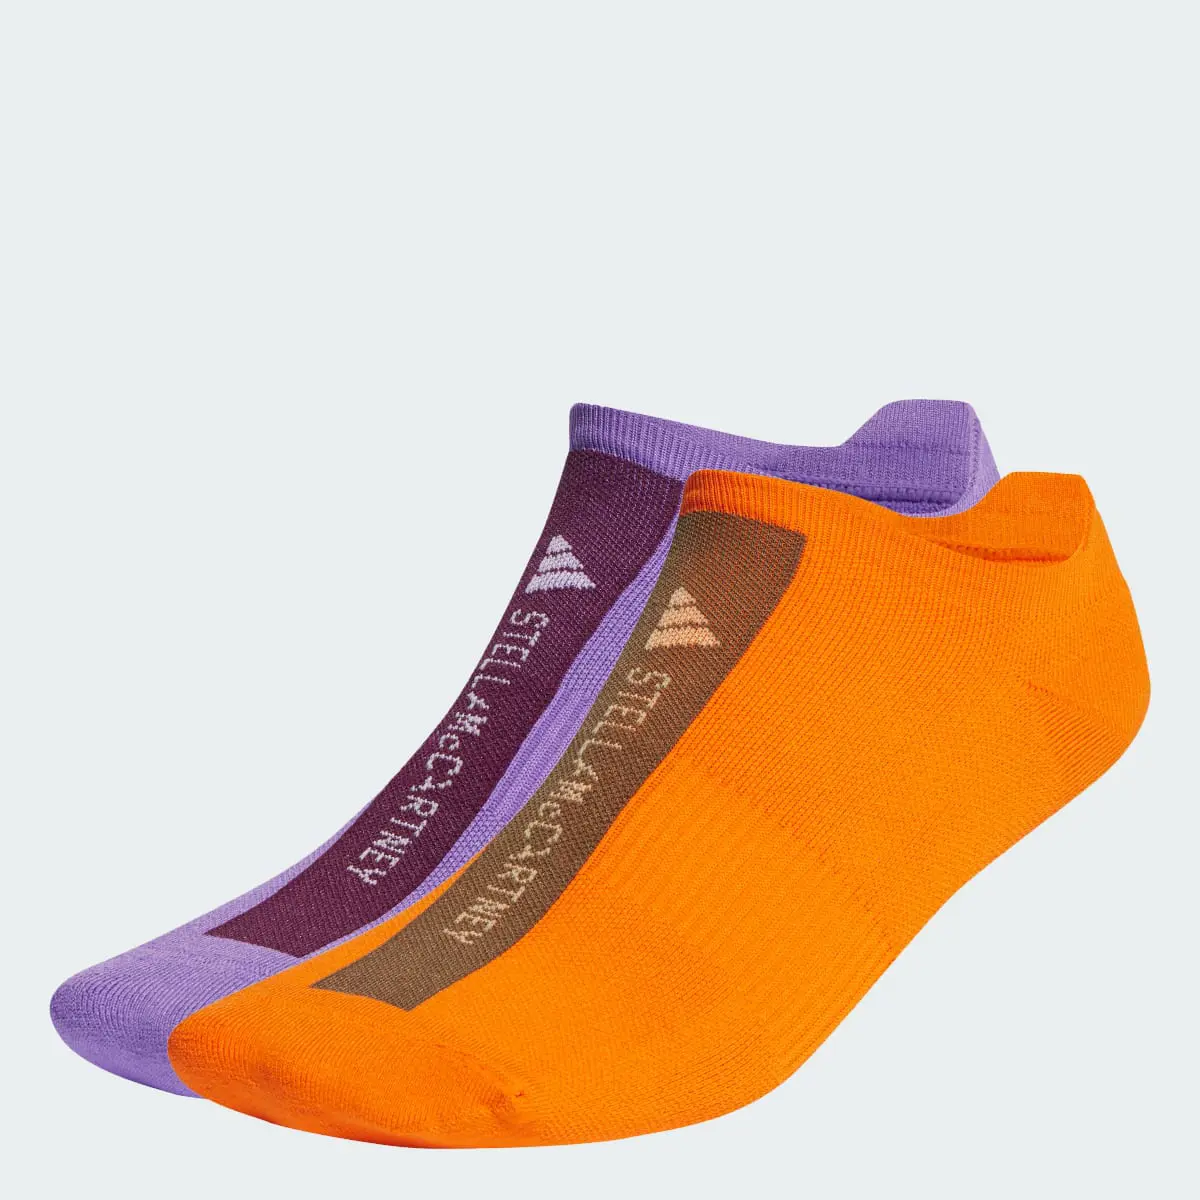 Adidas by Stella McCartney Low Socks. 1